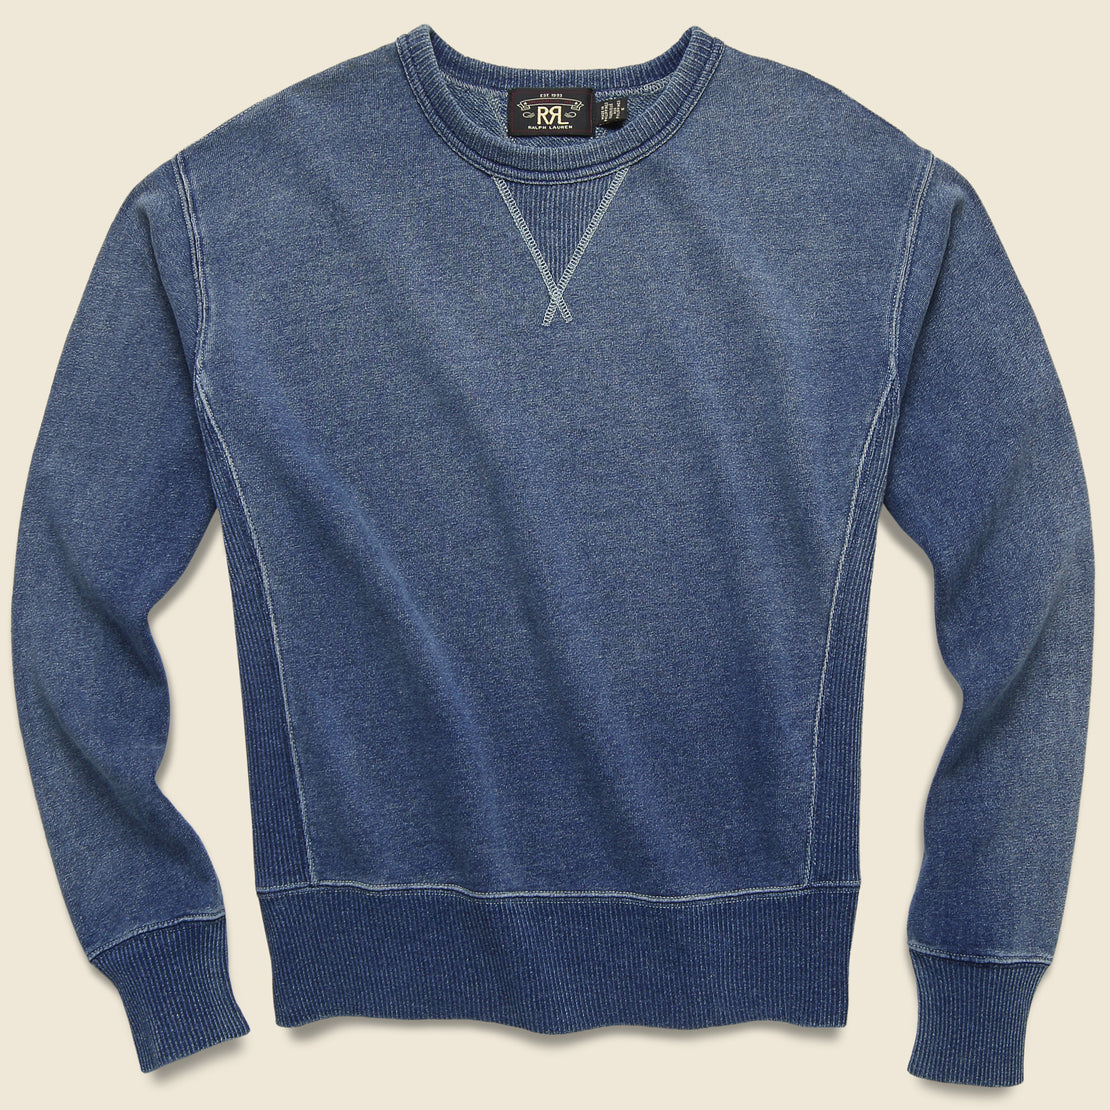 Indigo French Terry Sweatshirt - Washed Blue Indigo